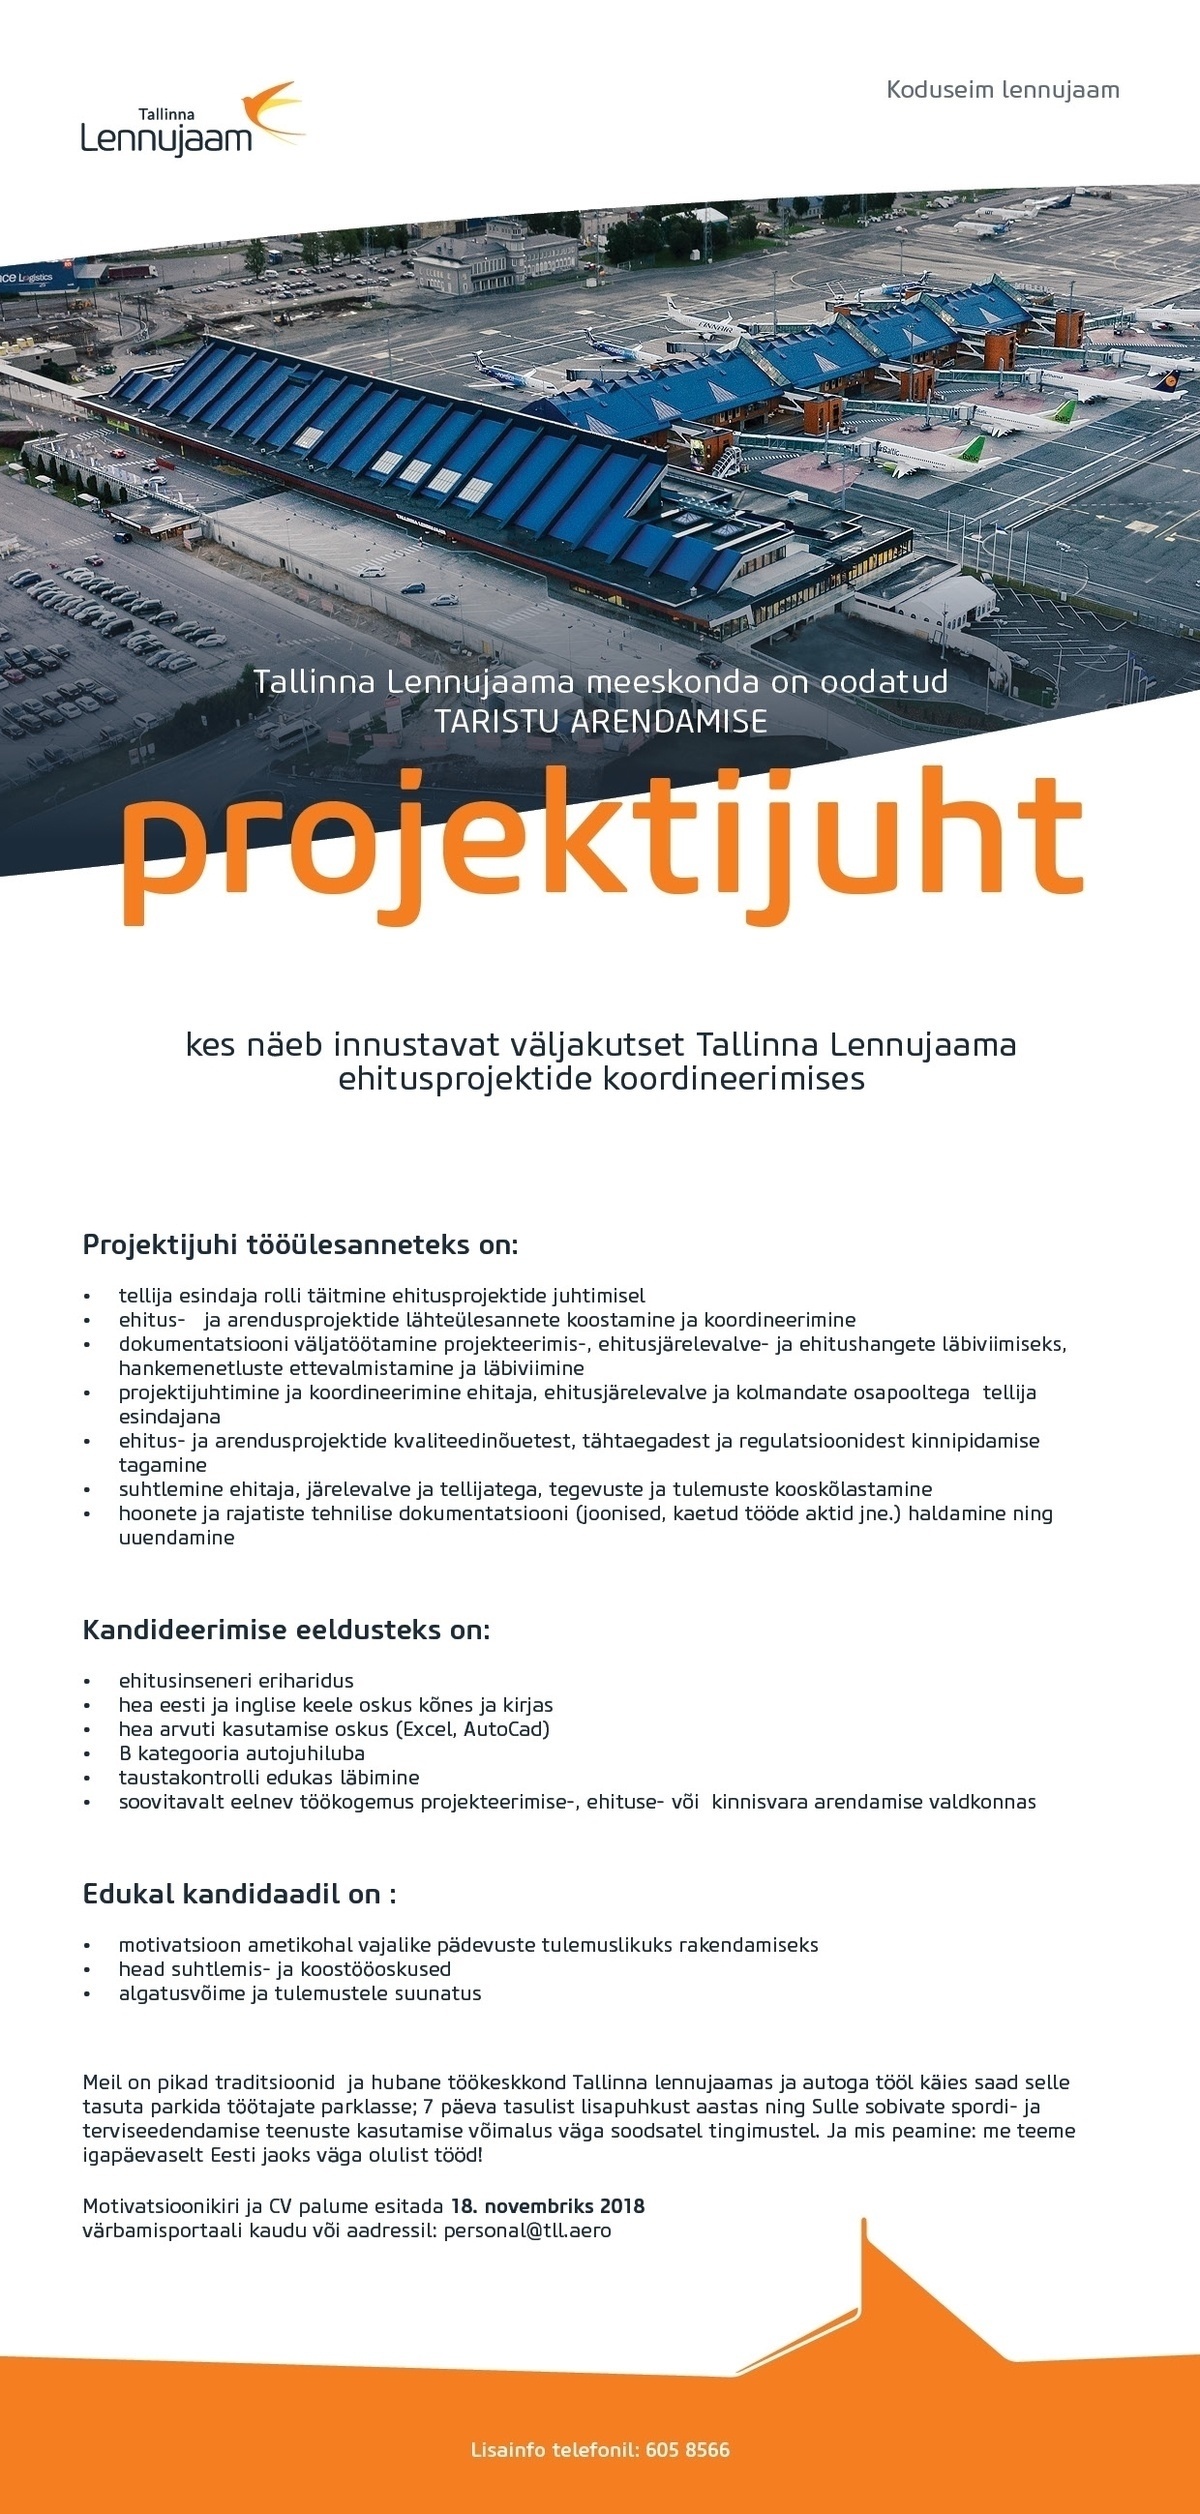 Tallinna Lennujaam AS Taristu arendamise projektijuht